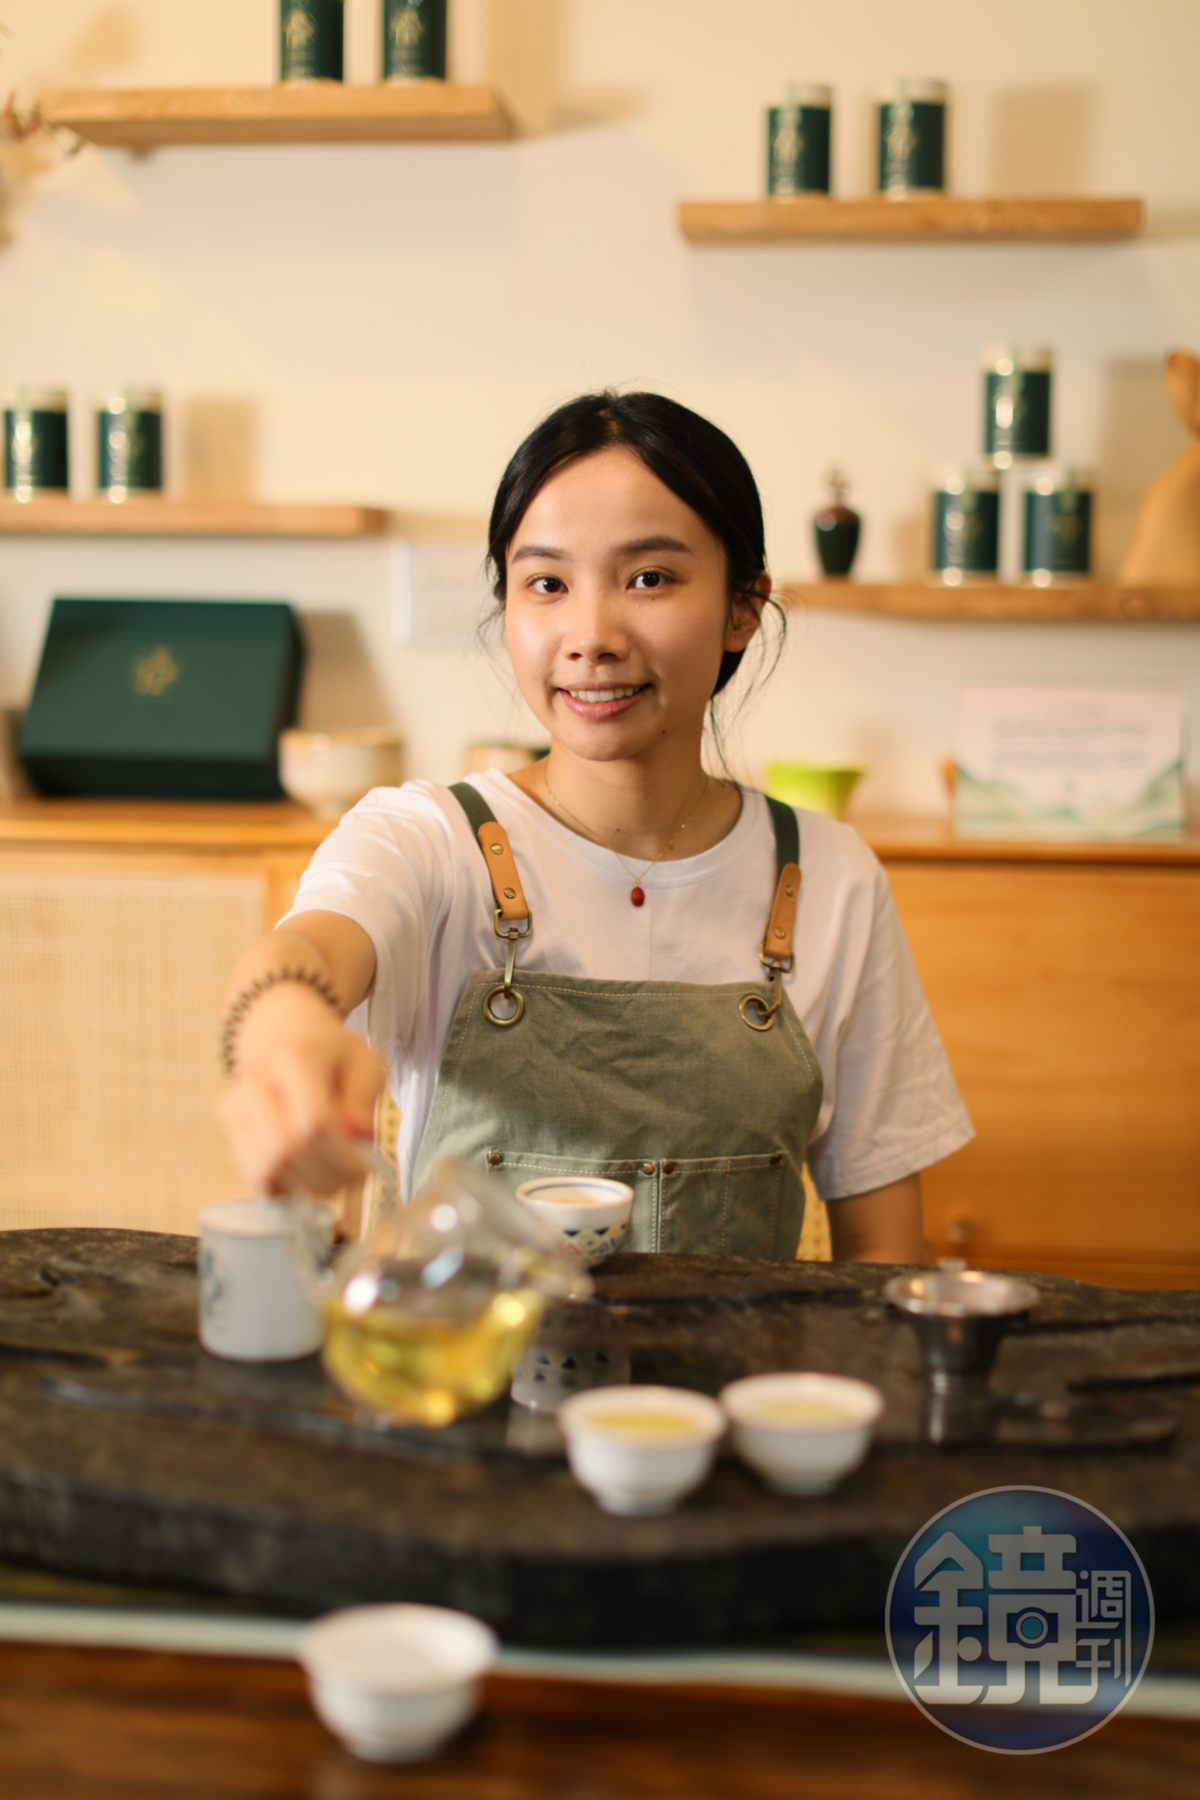 總是掛著笑容的主裡人葉佳欣對台灣茶有著深厚情感與信心。